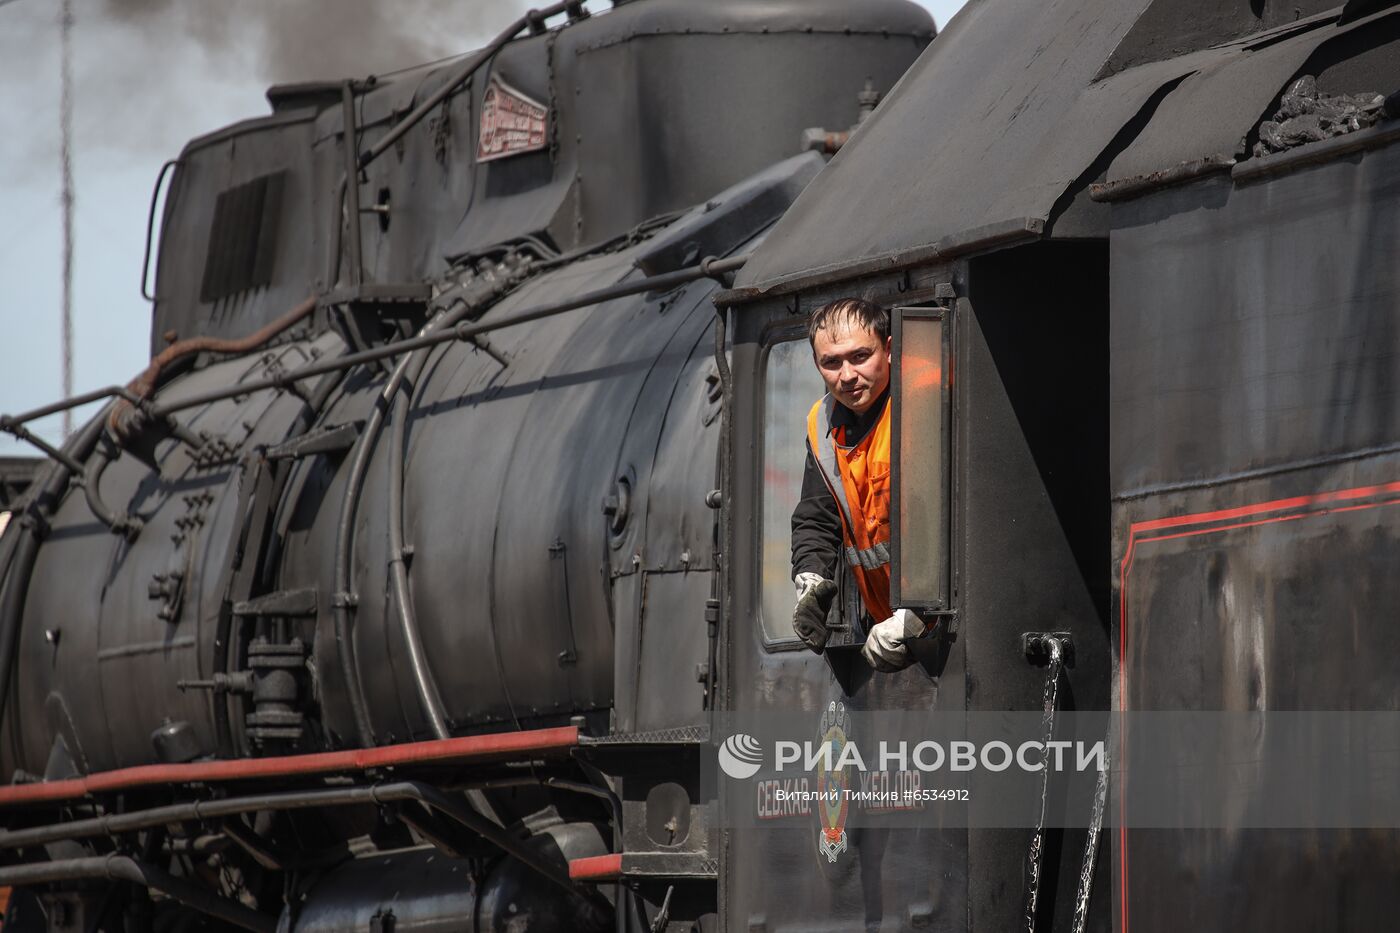 Ретро-поезд "Победа" в Новороссийске